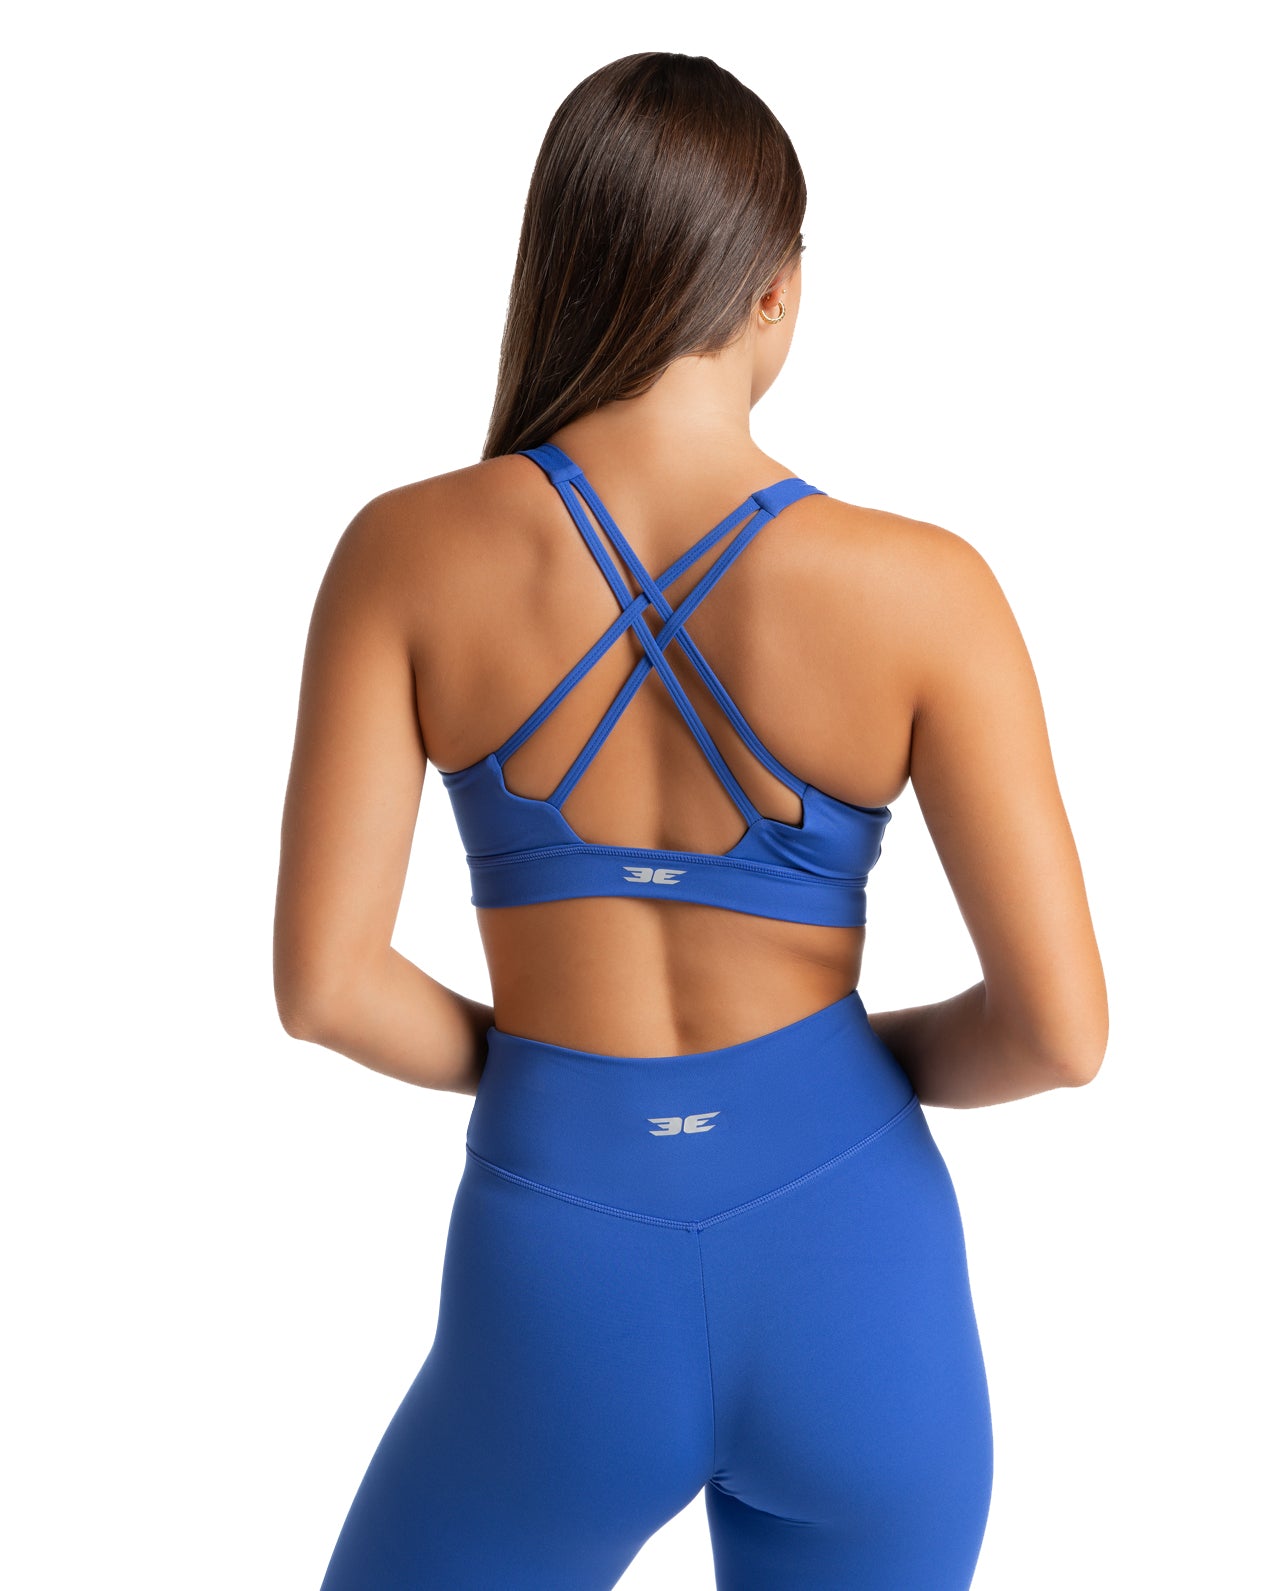 Everlast Fitness bra Blue - $11 - From Kate